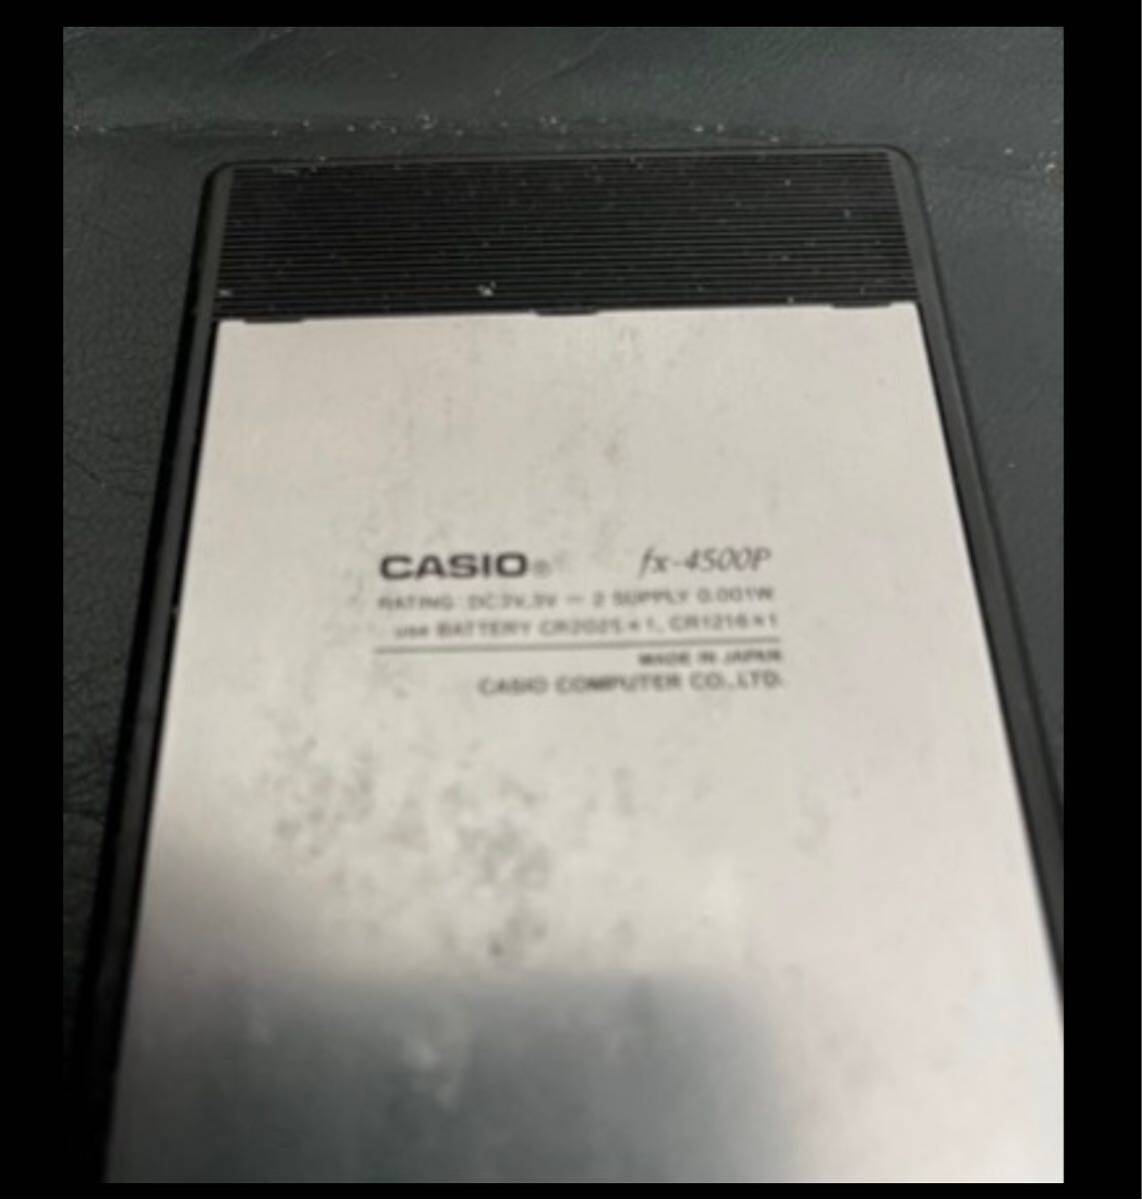 CASIO FX-4500P программируемый калькулятор Casio 